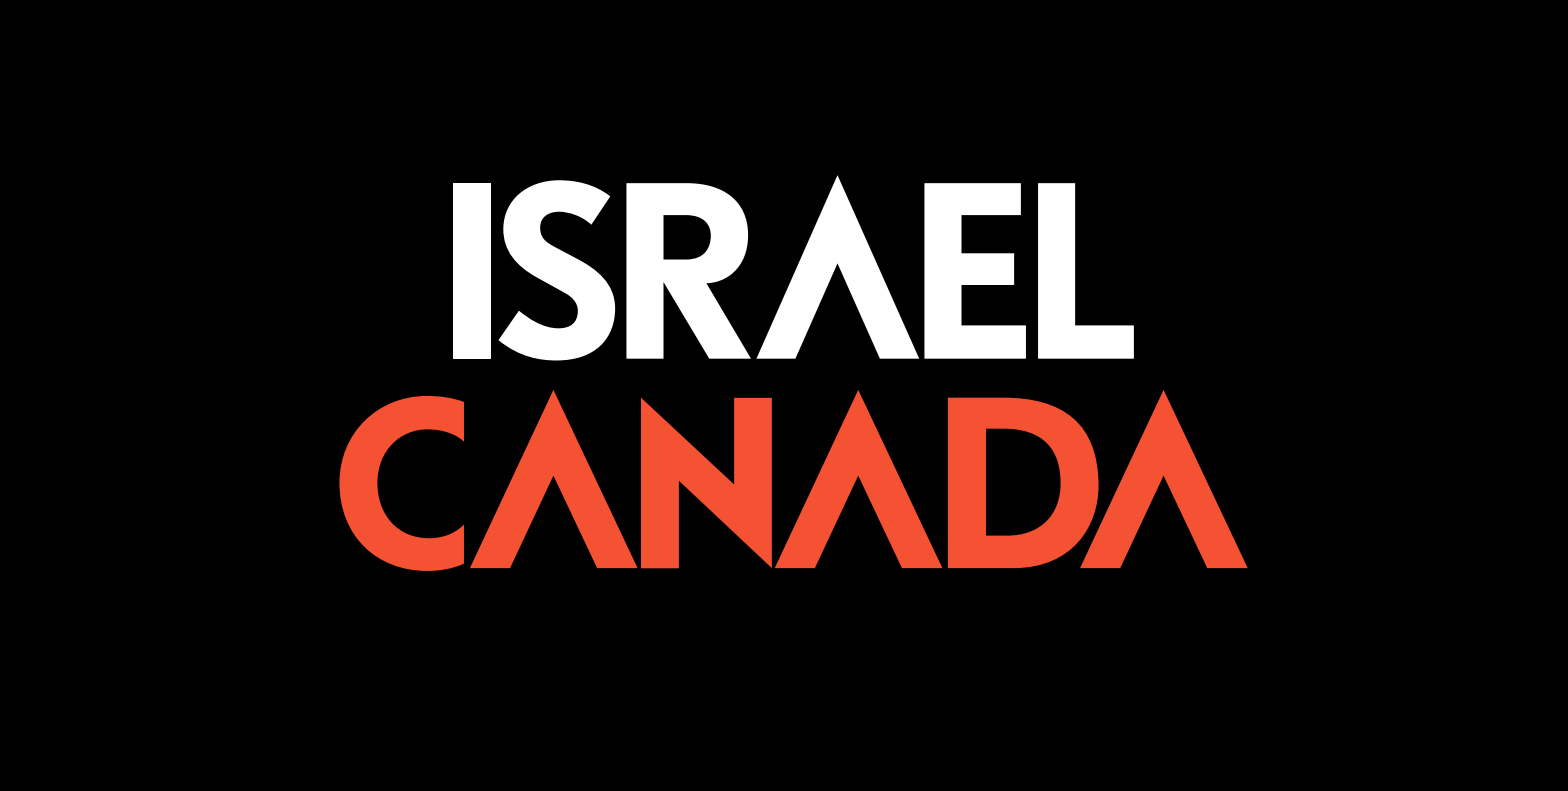 Israel Canada logo